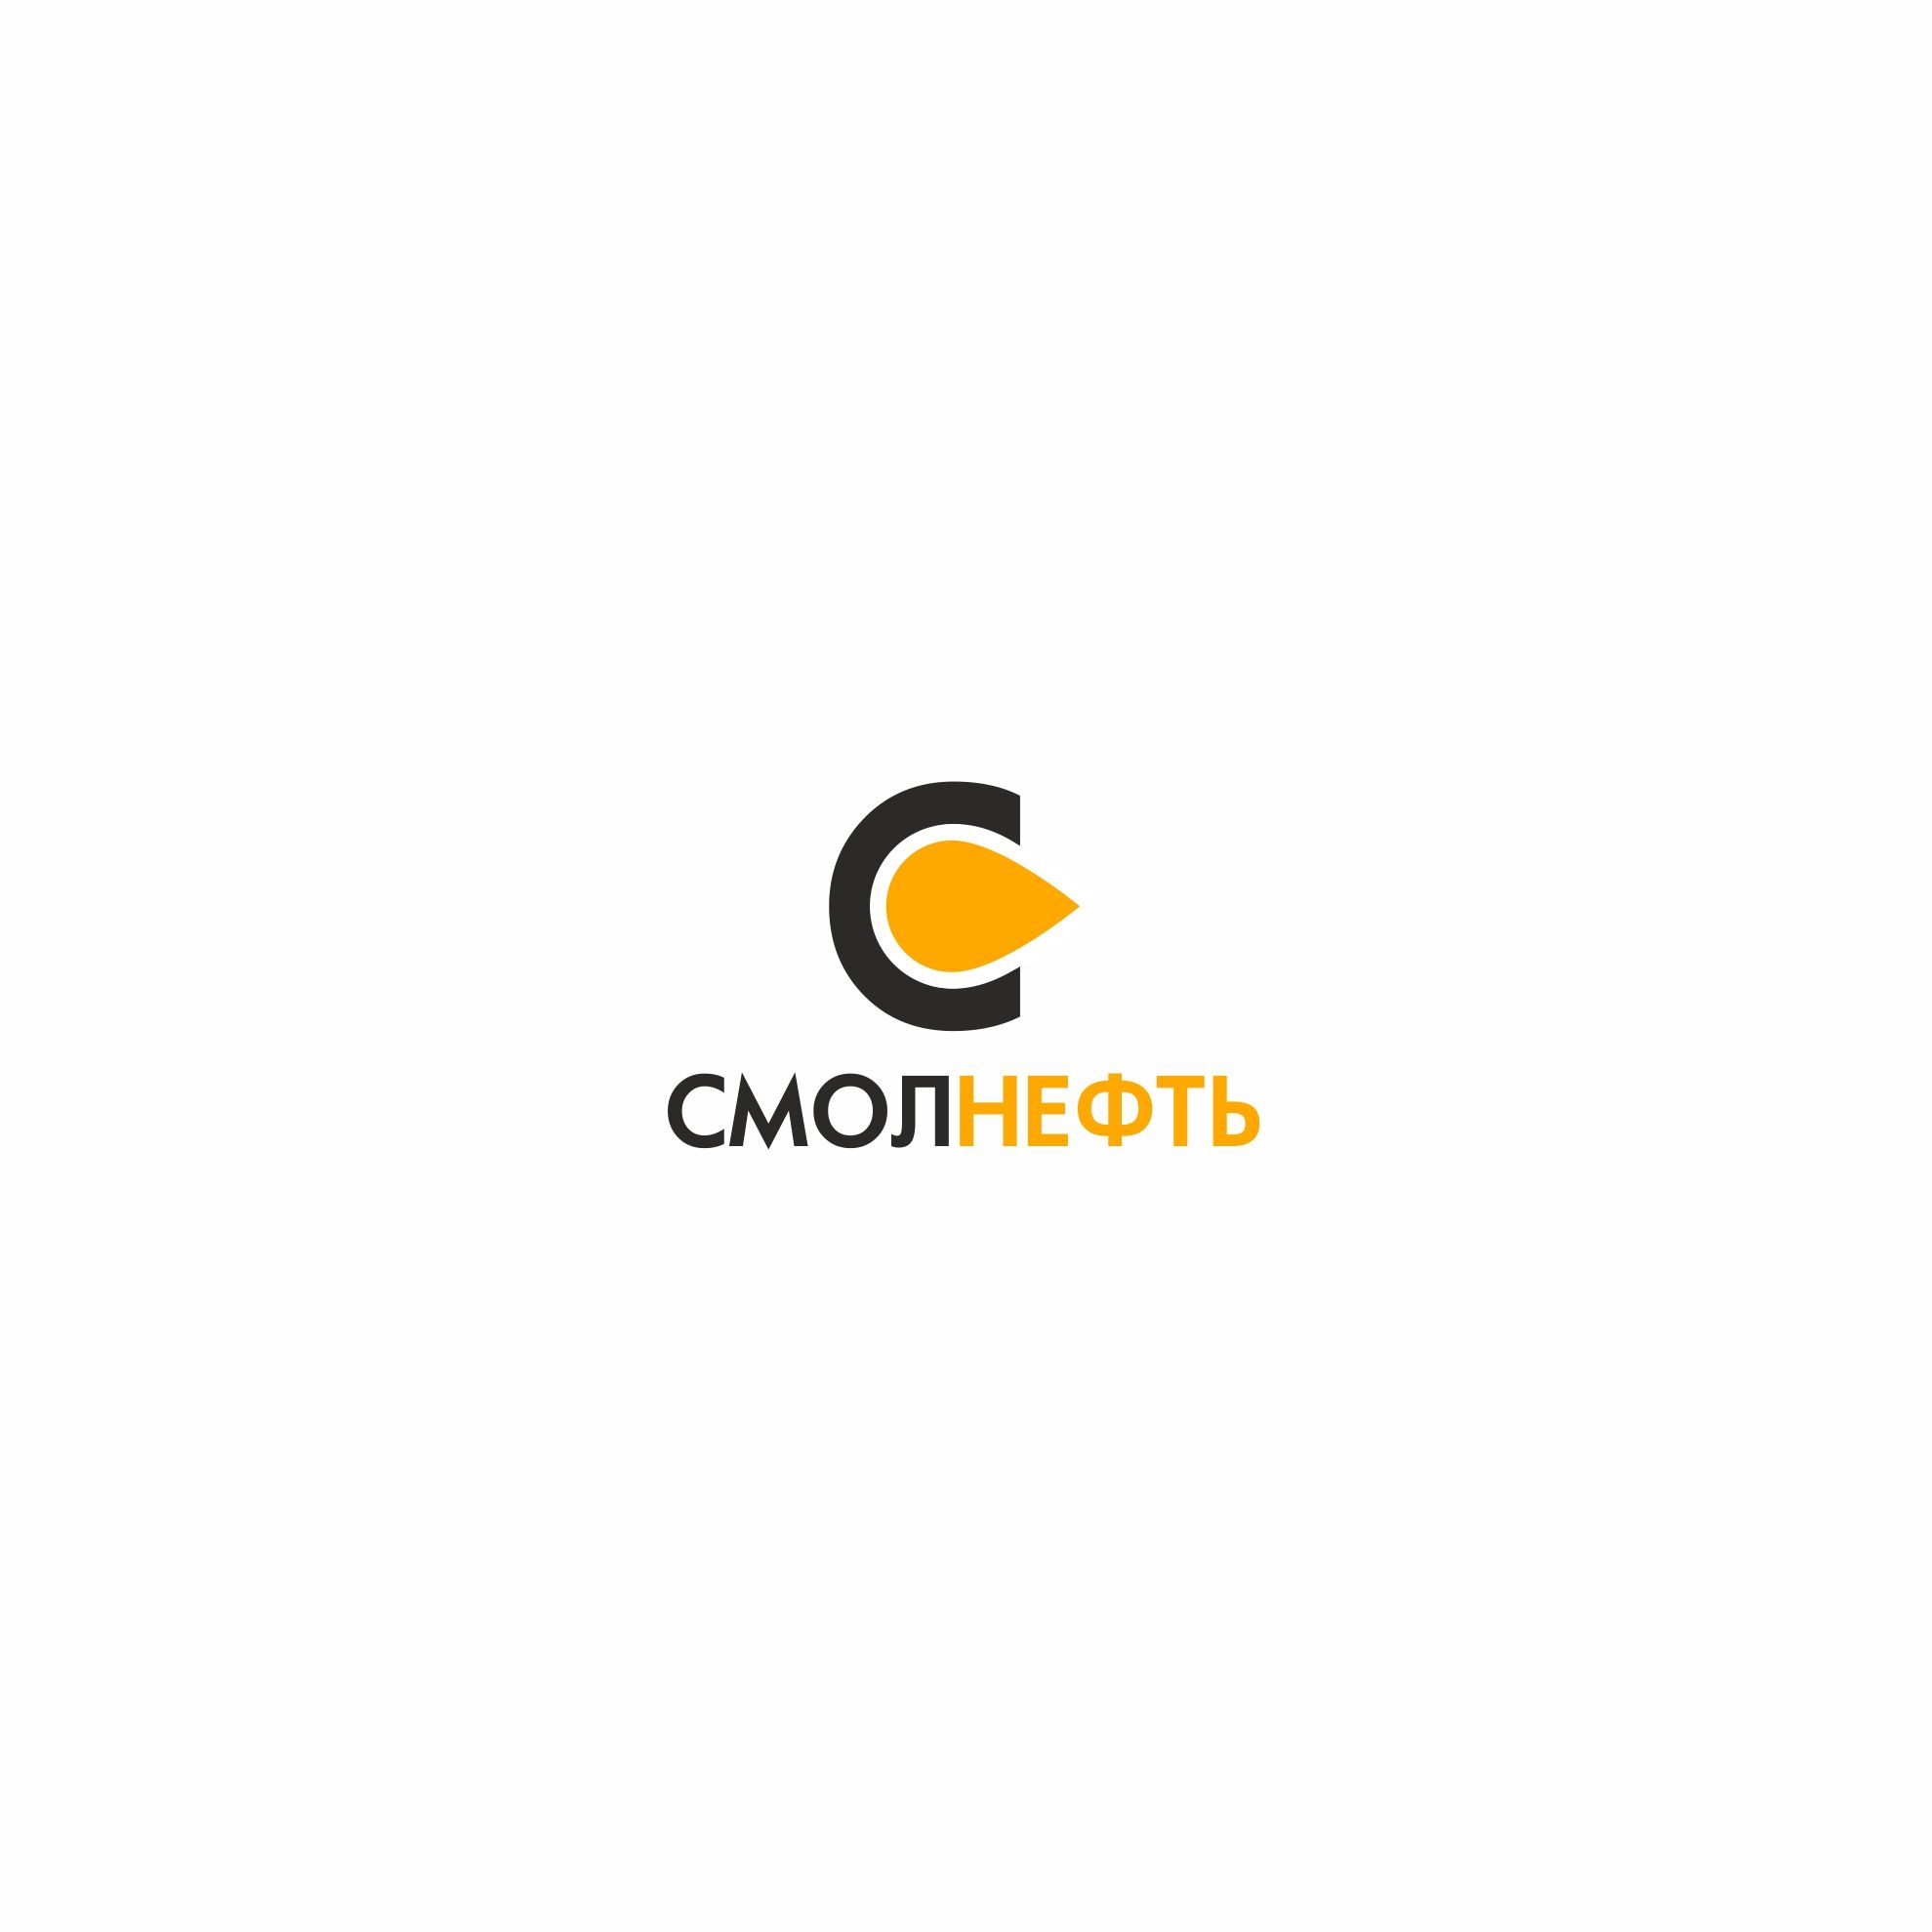 Логотип для Смолнефть - дизайнер trojni